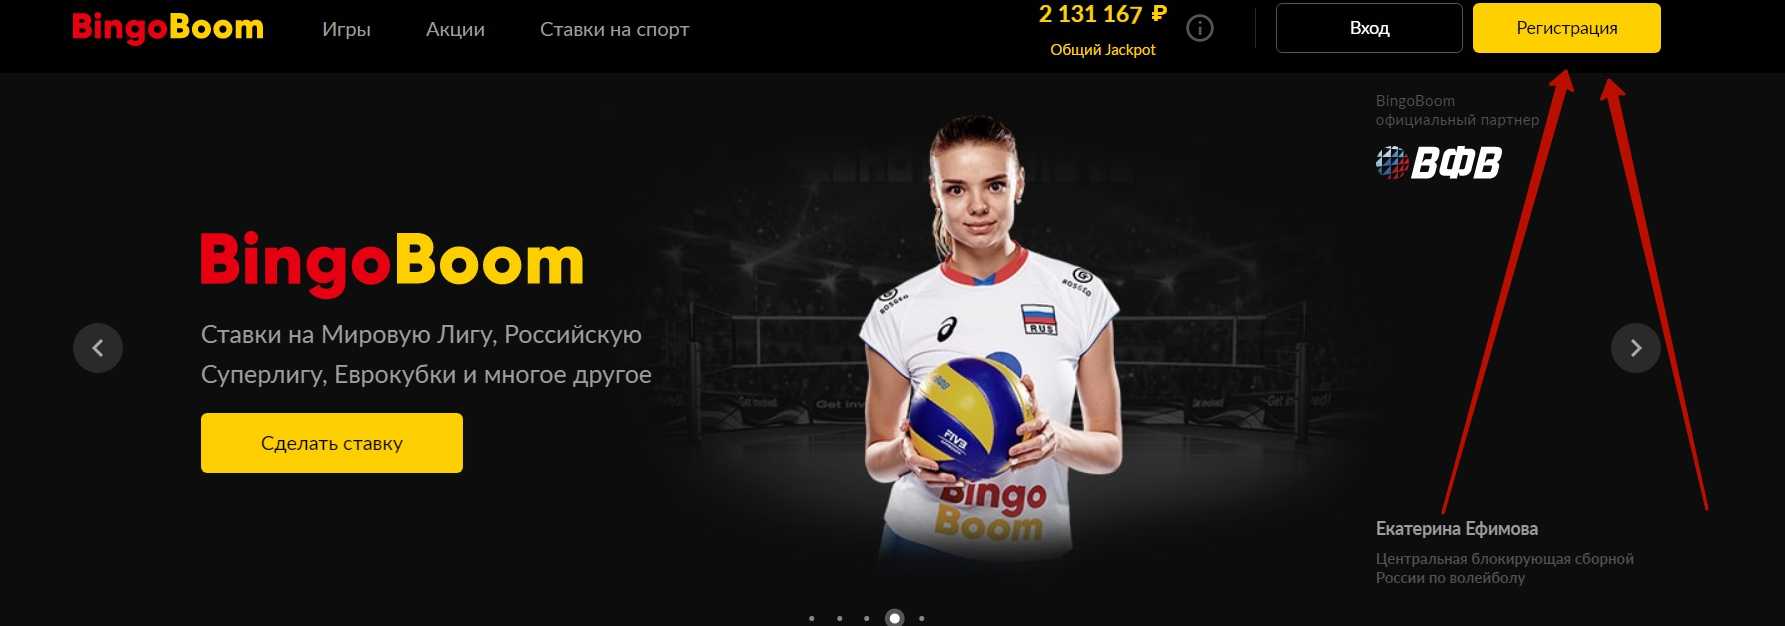 bingoboom ru официальный сайт ставки на спорт